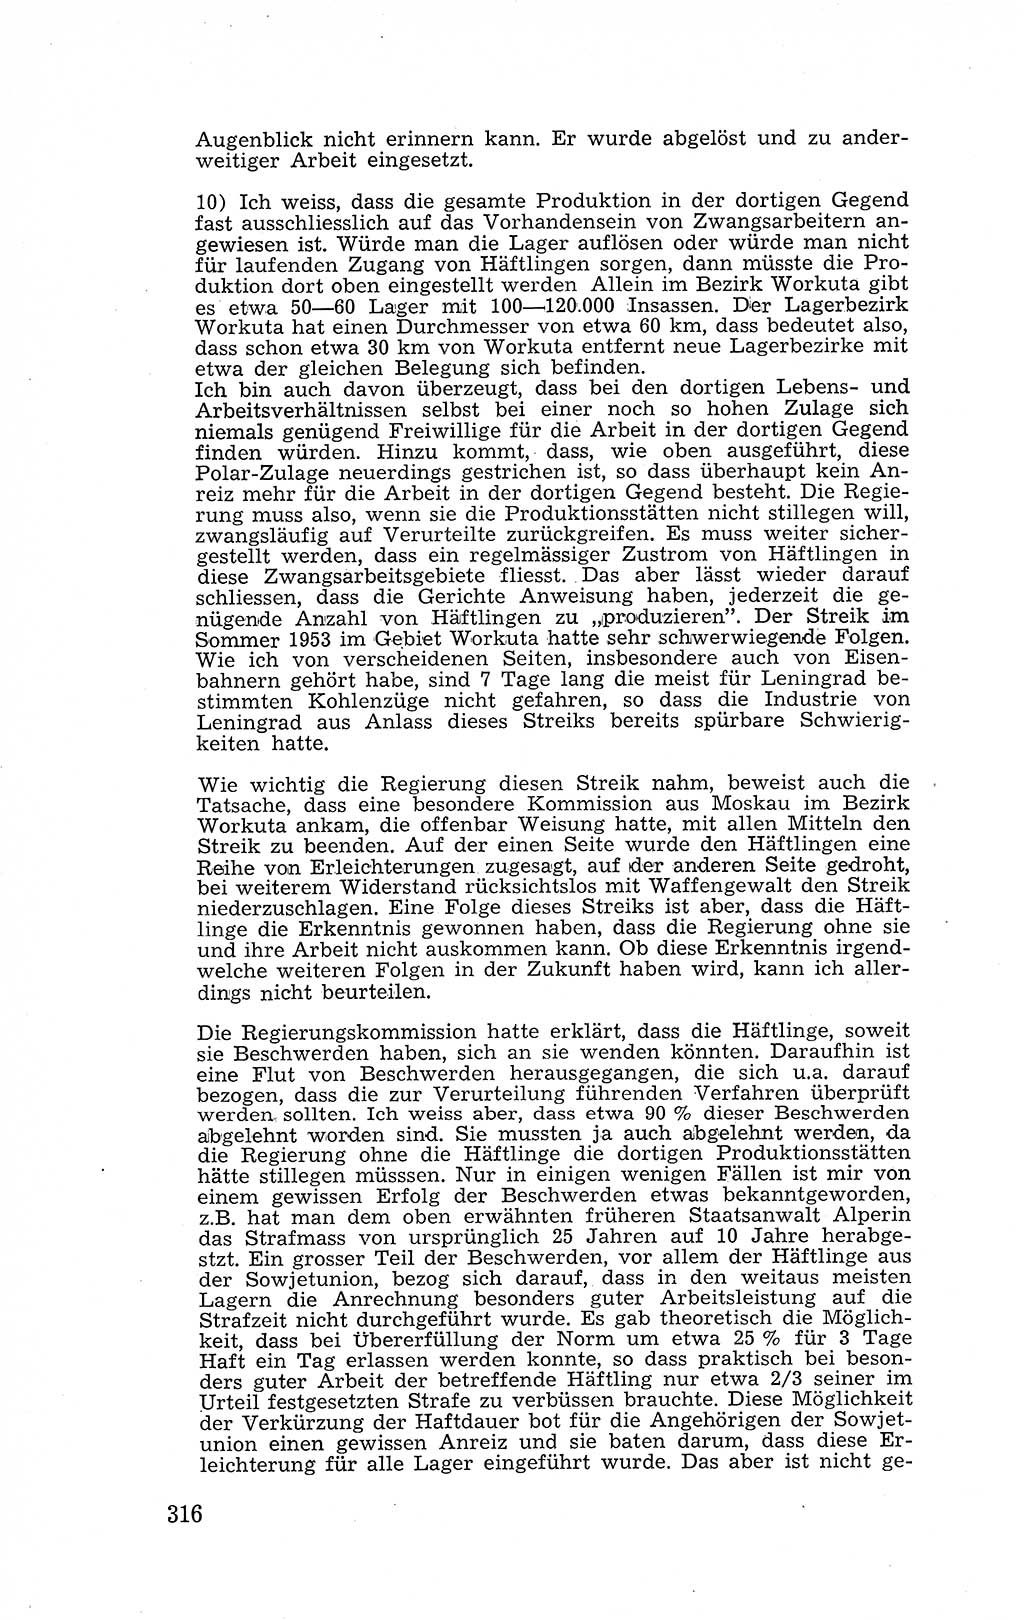 Recht in Fesseln, Dokumente, Internationale Juristen-Kommission [Bundesrepublik Deutschland (BRD)] 1955, Seite 316 (R. Dok. IJK BRD 1955, S. 316)